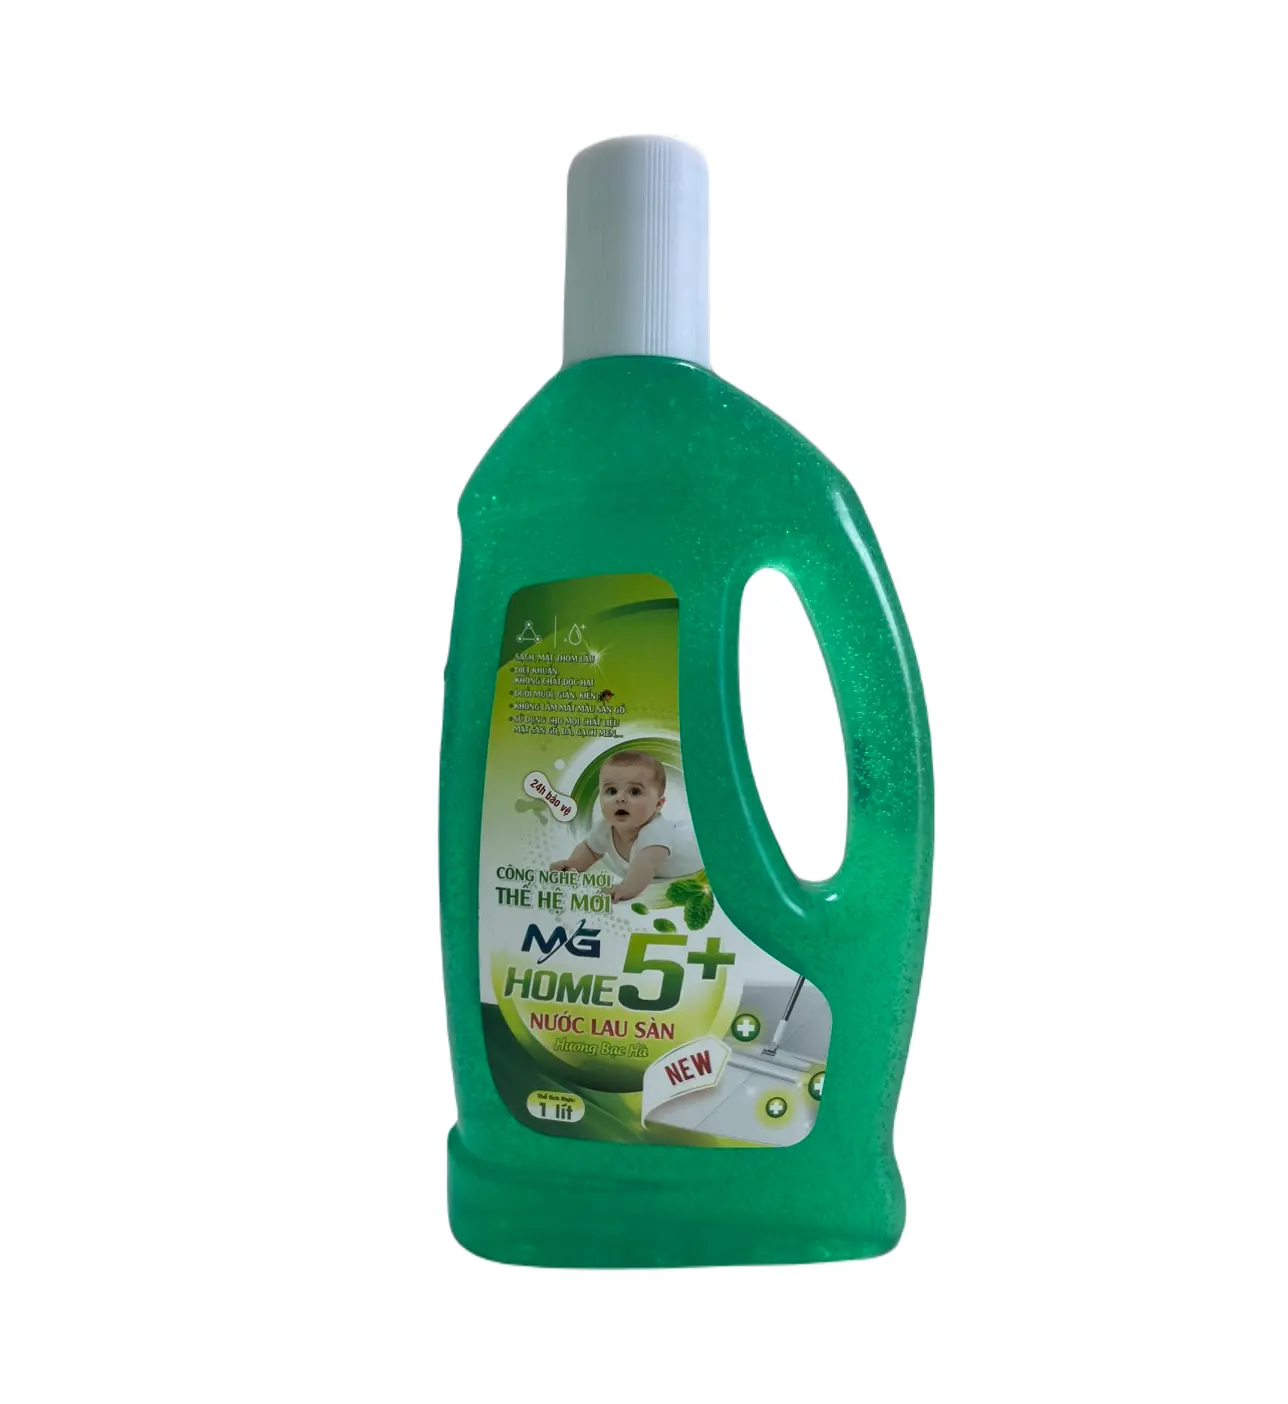 Detergente para la ropa, venta al por mayor, limpiador de suelos suave con fragancia agradable para la piel, limpiador de suelos con aroma de menta, limpieza multiusos